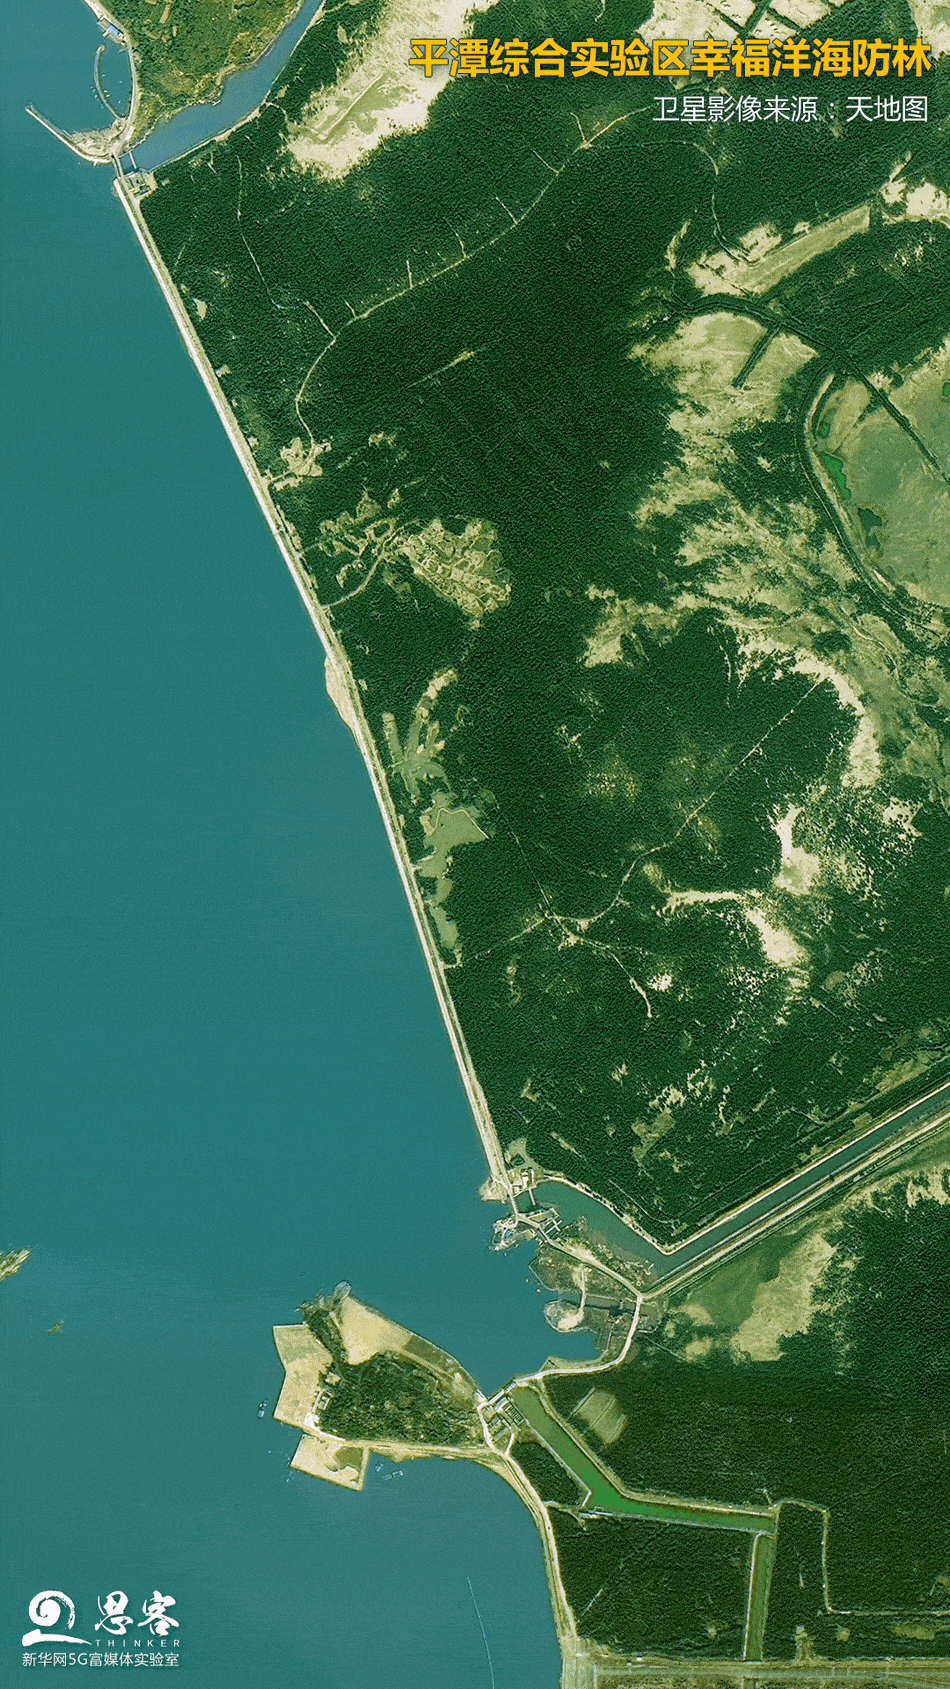 平潭综合实验区幸福洋海防林卫星影像来源:天地图